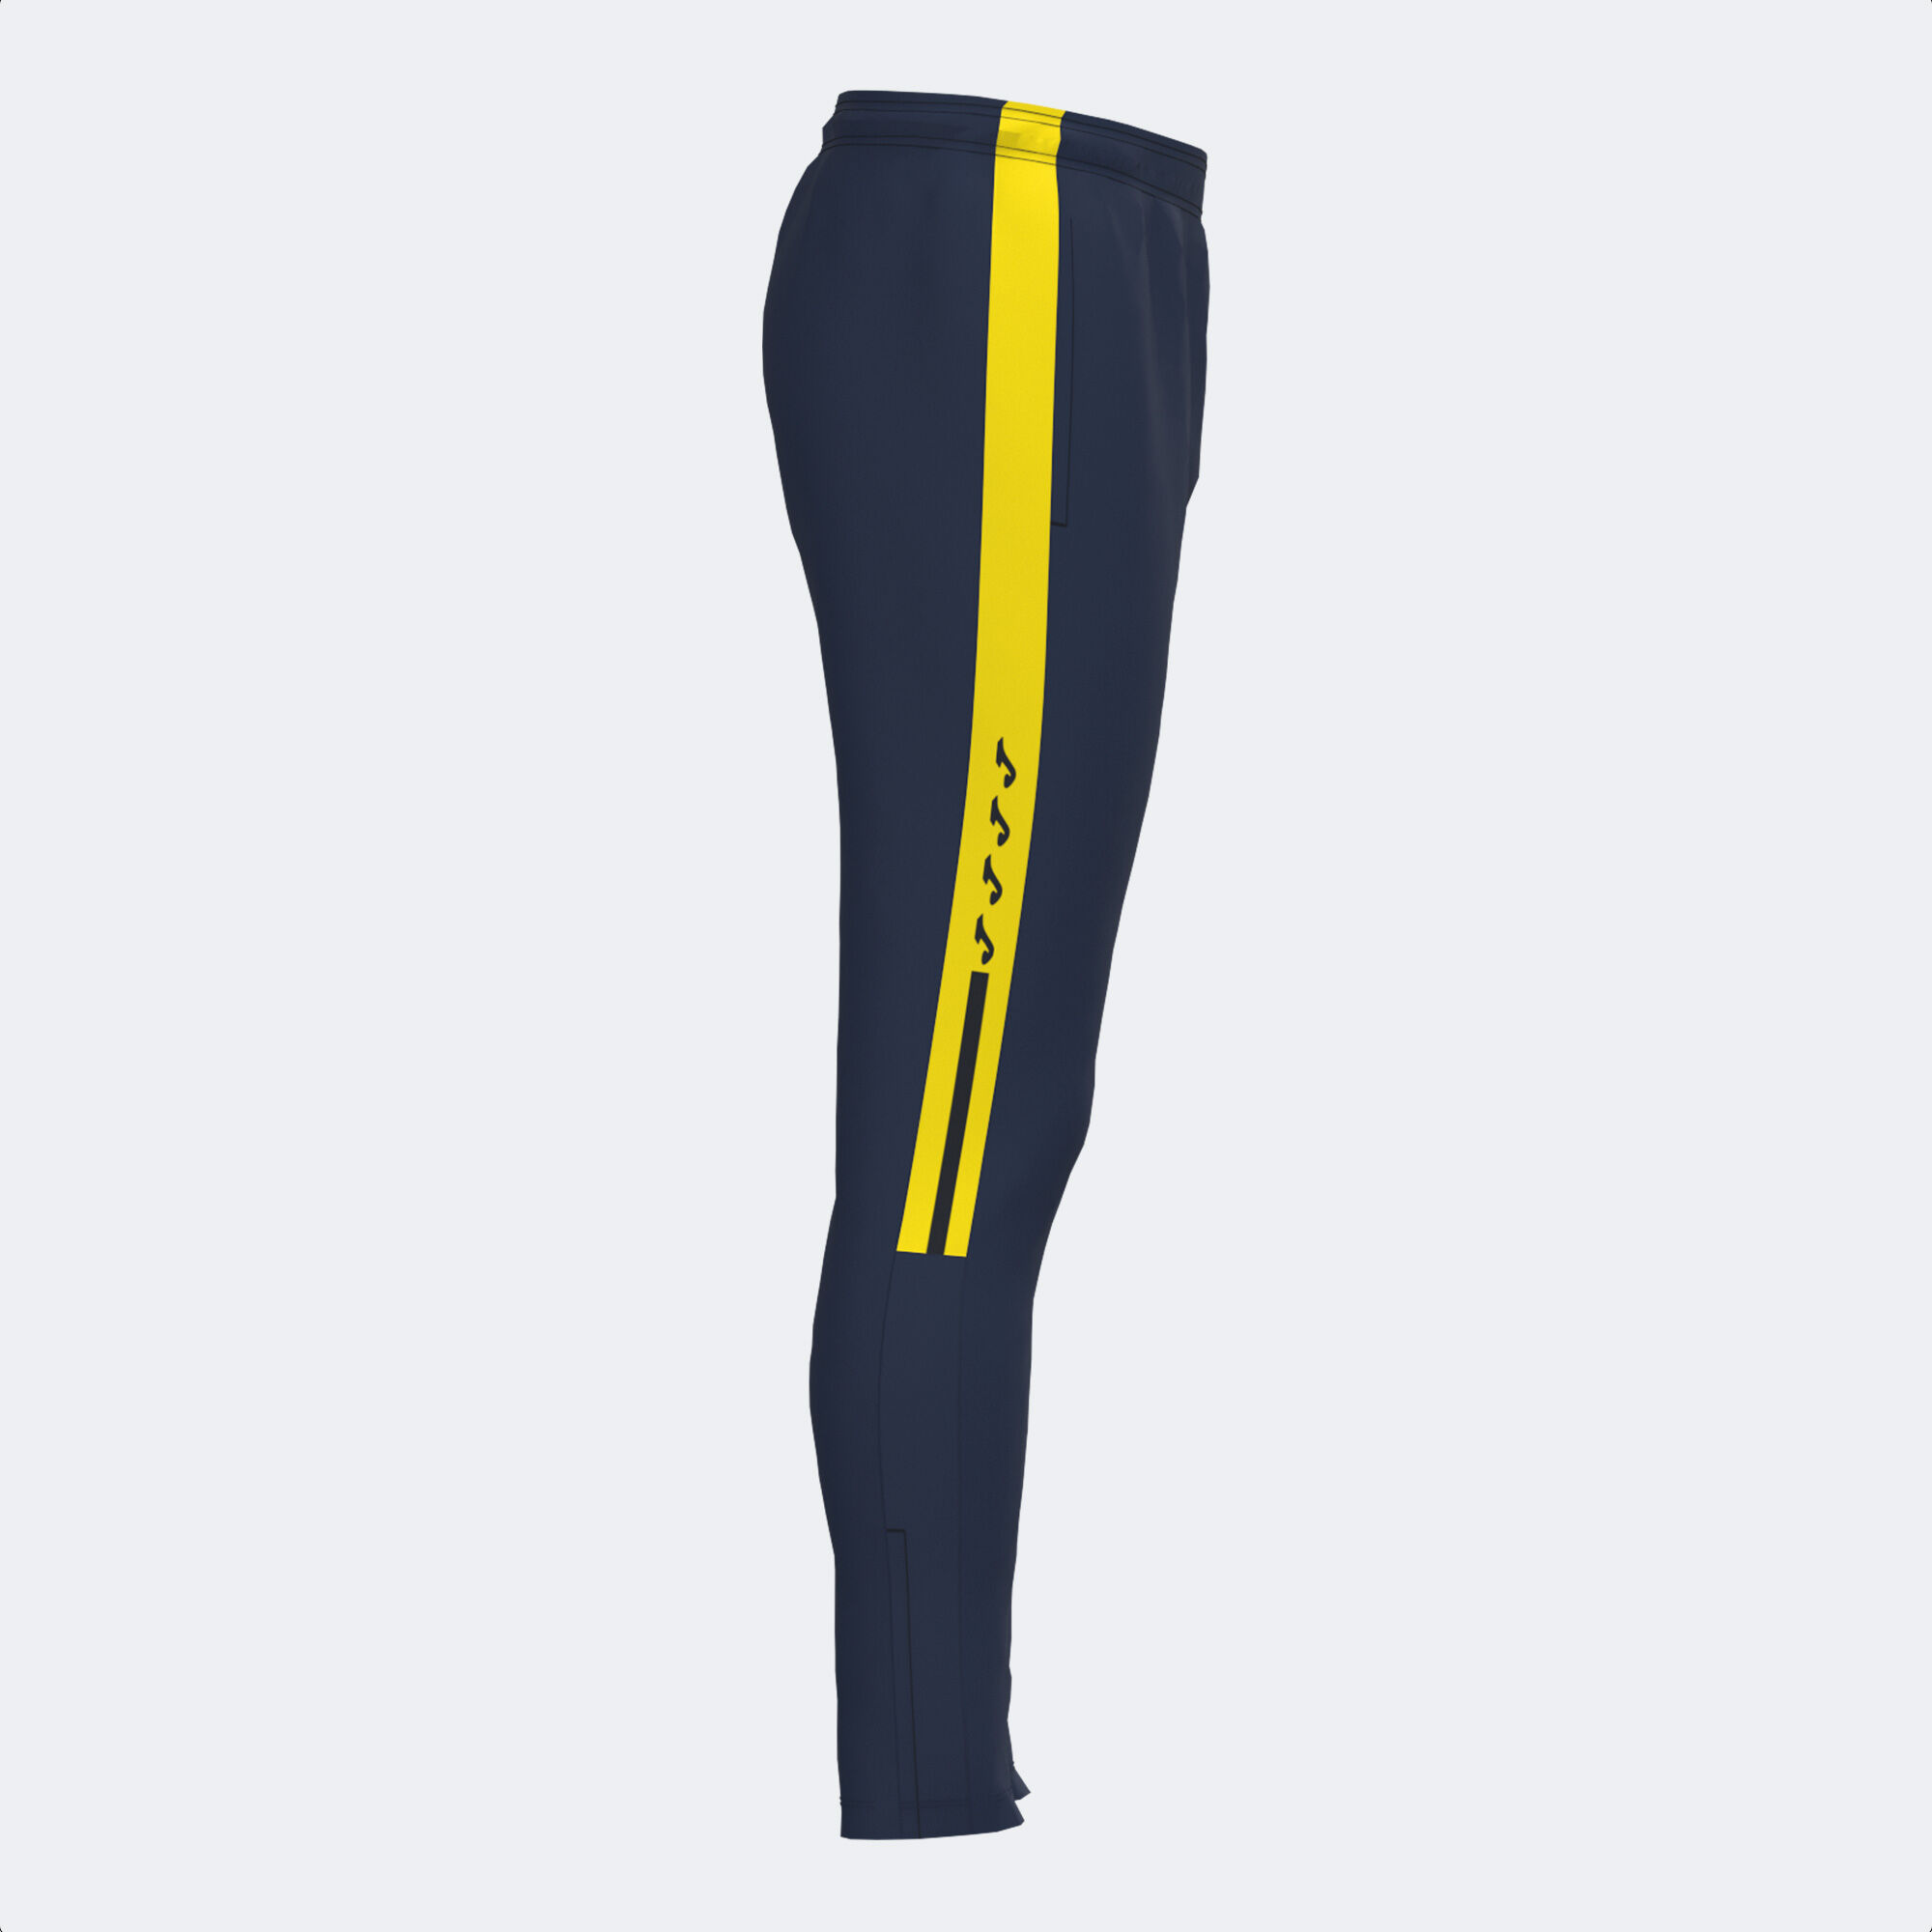 Pantalone lungo uomo Olimpiada blu navy giallo